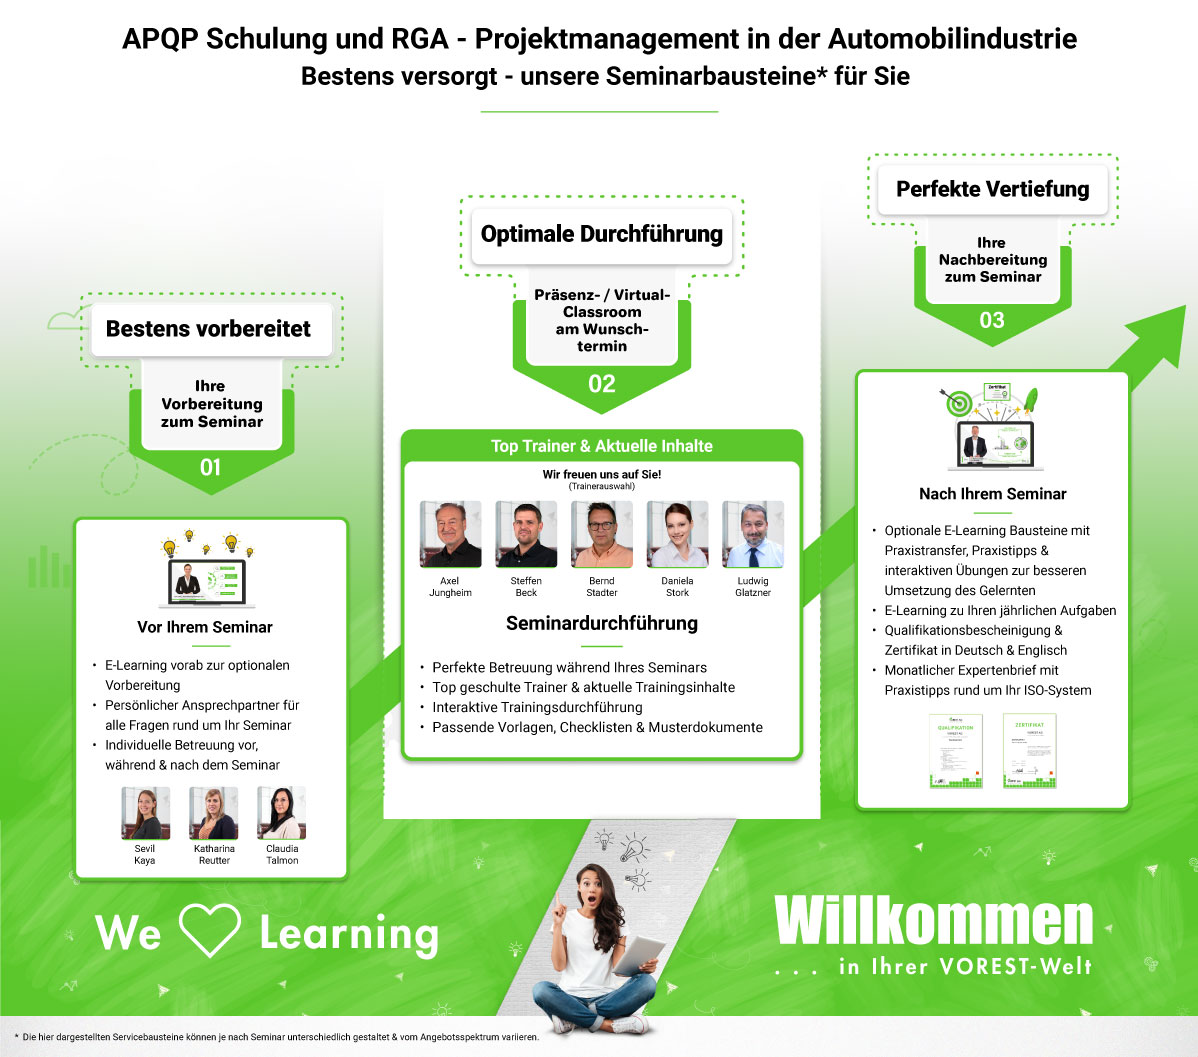 APQP Schulung und RGA - Projektmanagement in der Automobilindustrie